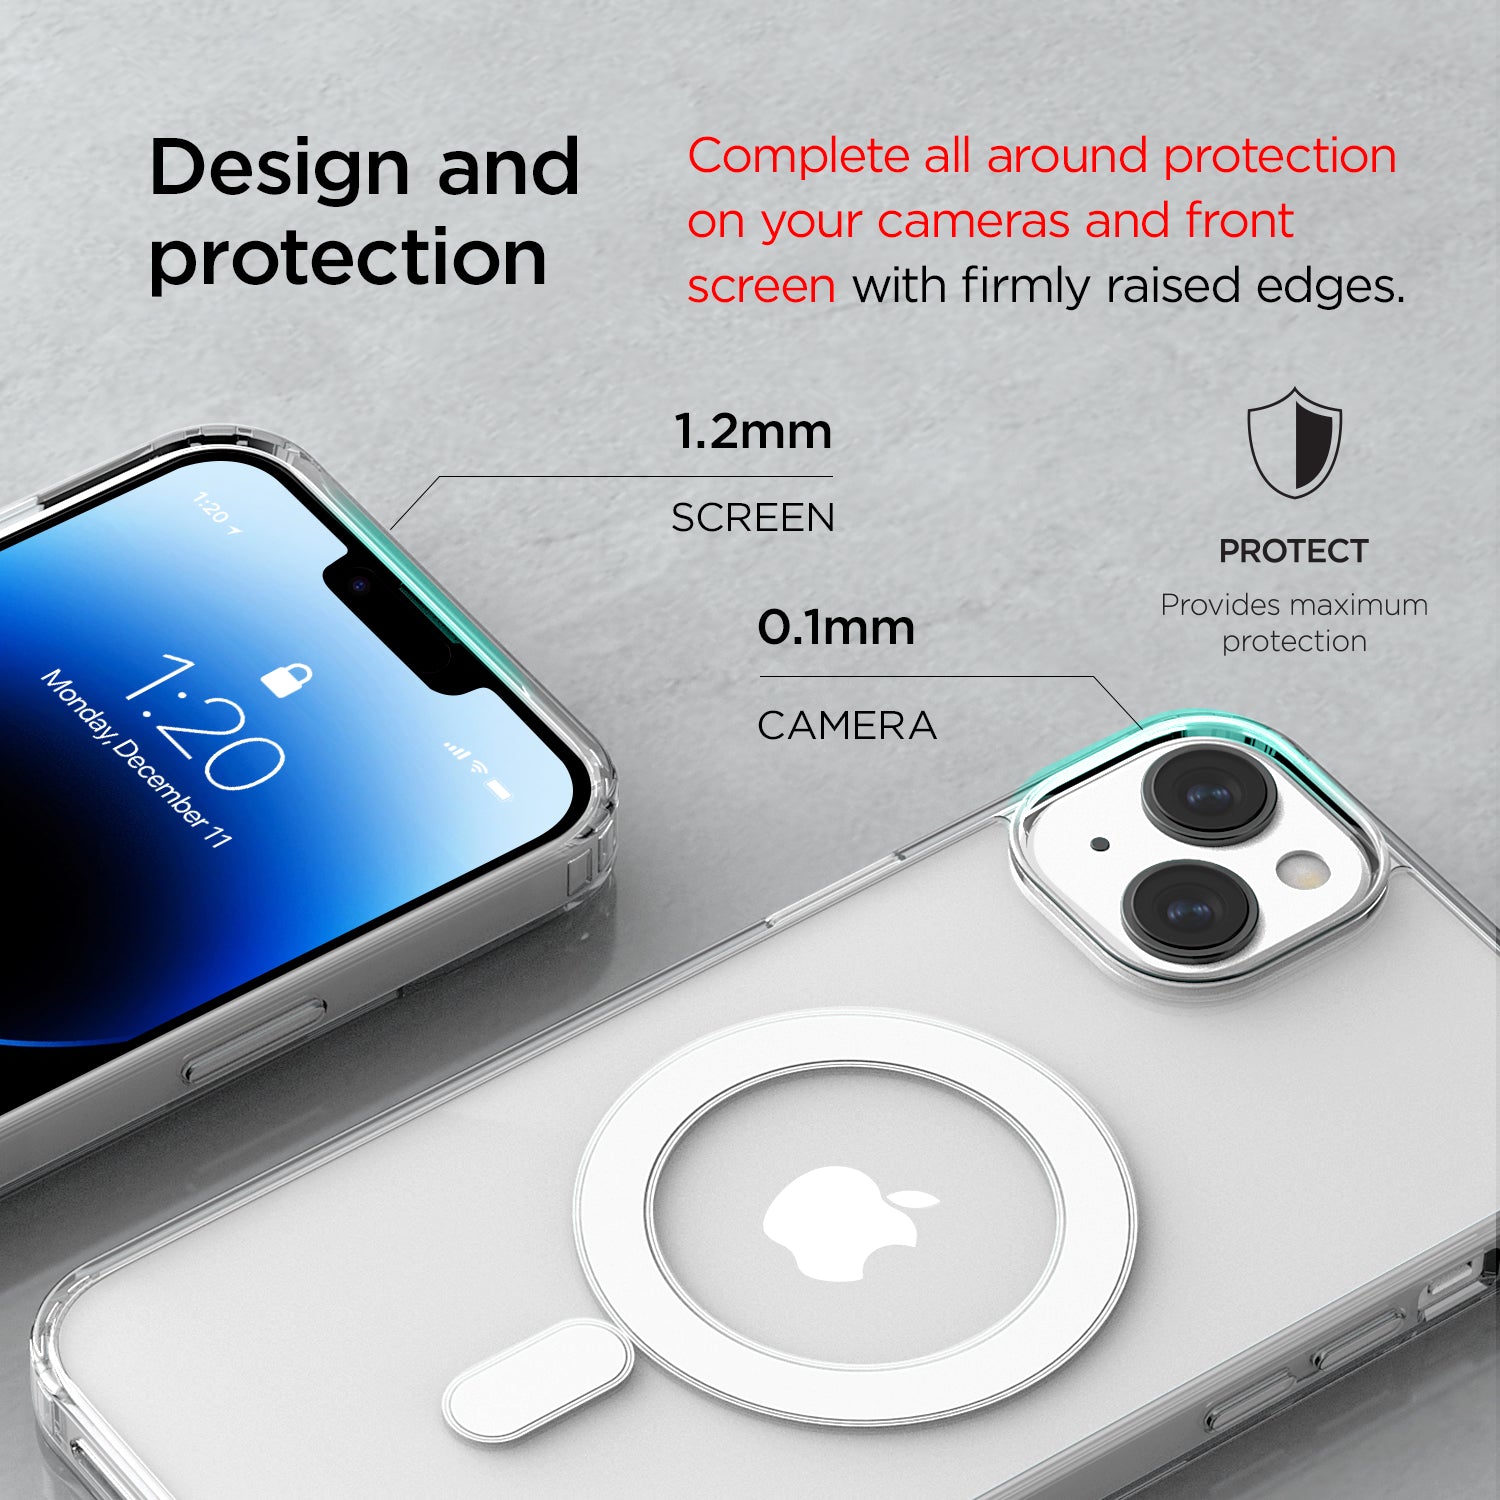 Modern Apple iPhone 14 Pro case Glide Ultimate by VRS DESIGN – VRS